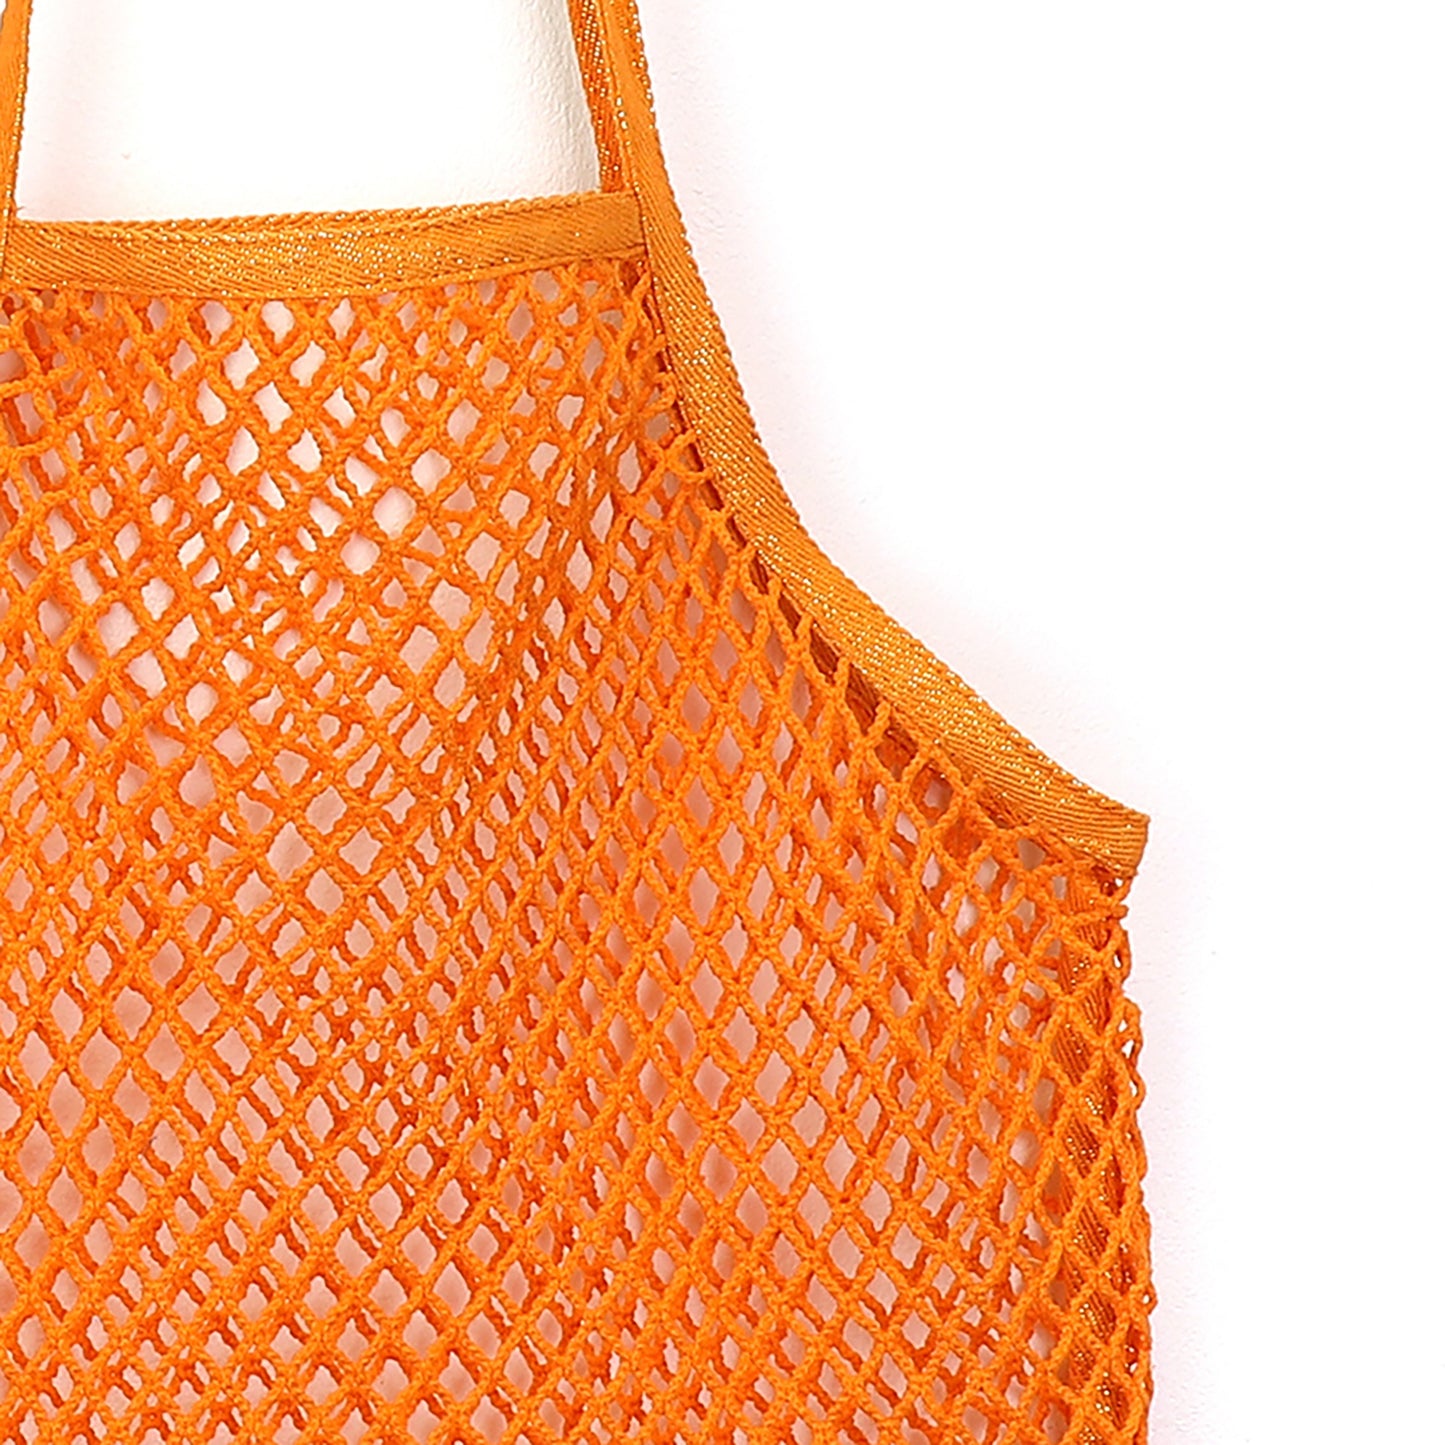 Orange String Cotton Shopping Bag